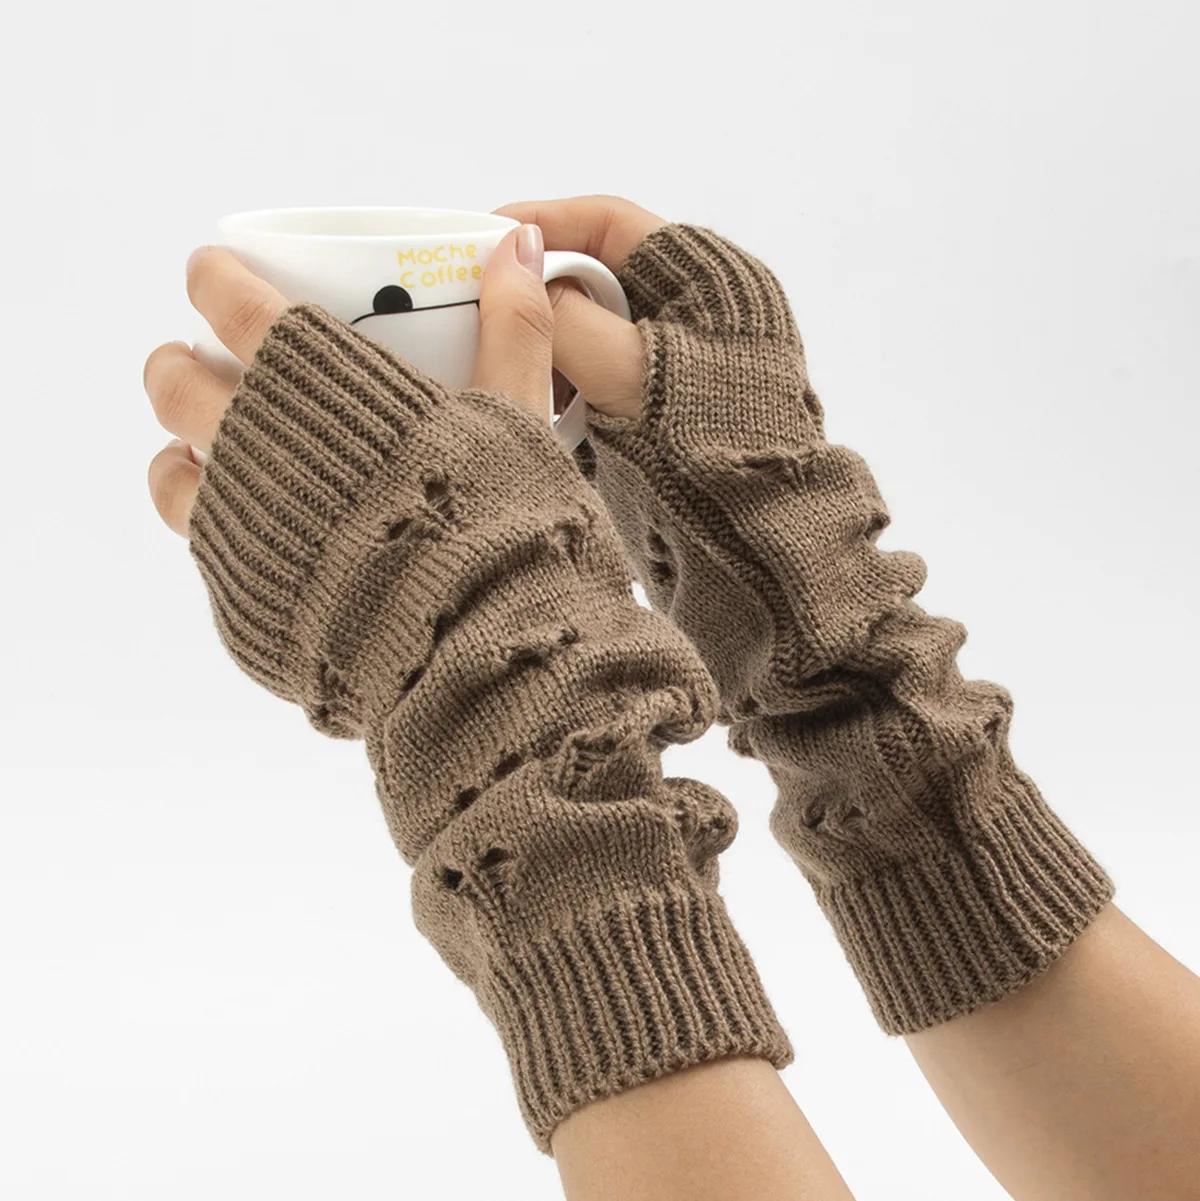 Women Arm Crochet Knitting Hollow Heart Mitten Winter Outdoor Warmer Gloves Stylish Girls 29cm Long Fingerless Sleeve Gloves Hot